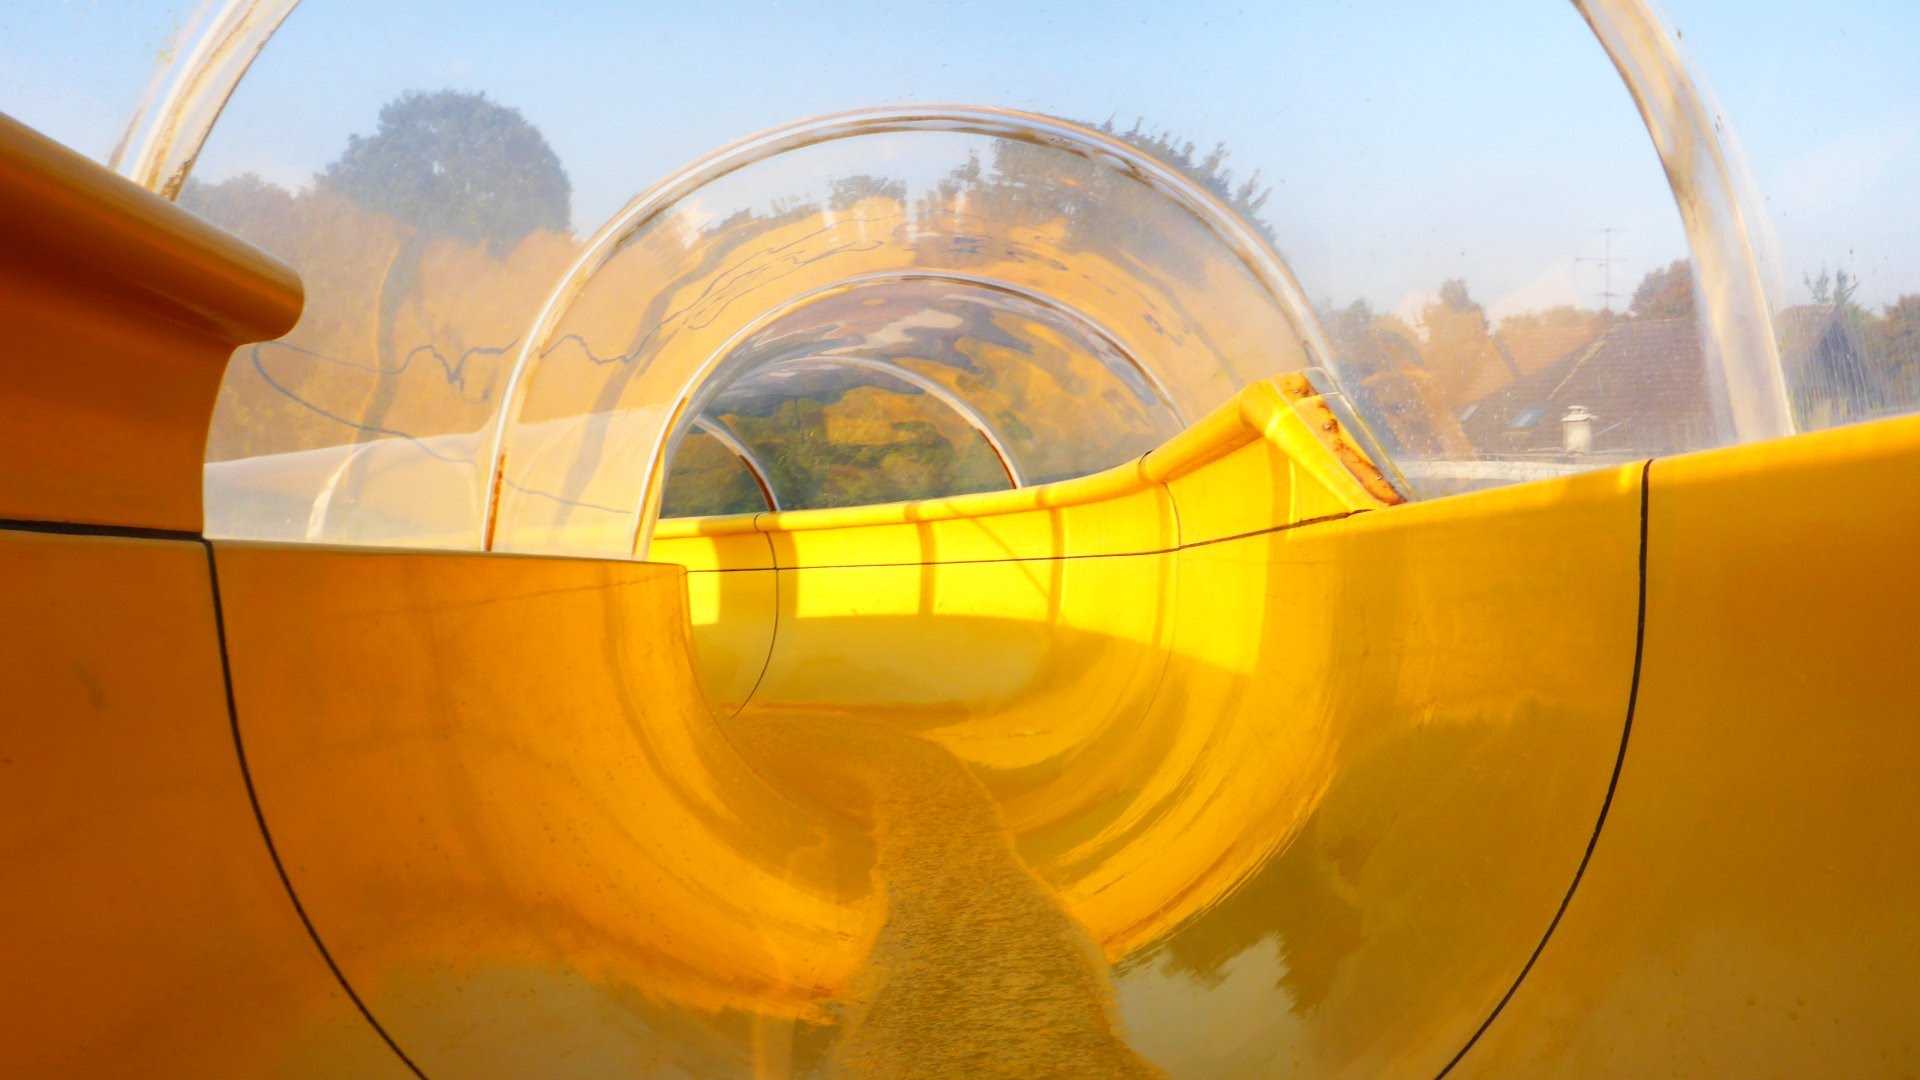 gelbe Tunnelrutsche :: Tunnel slide | aqua-sol Kempen